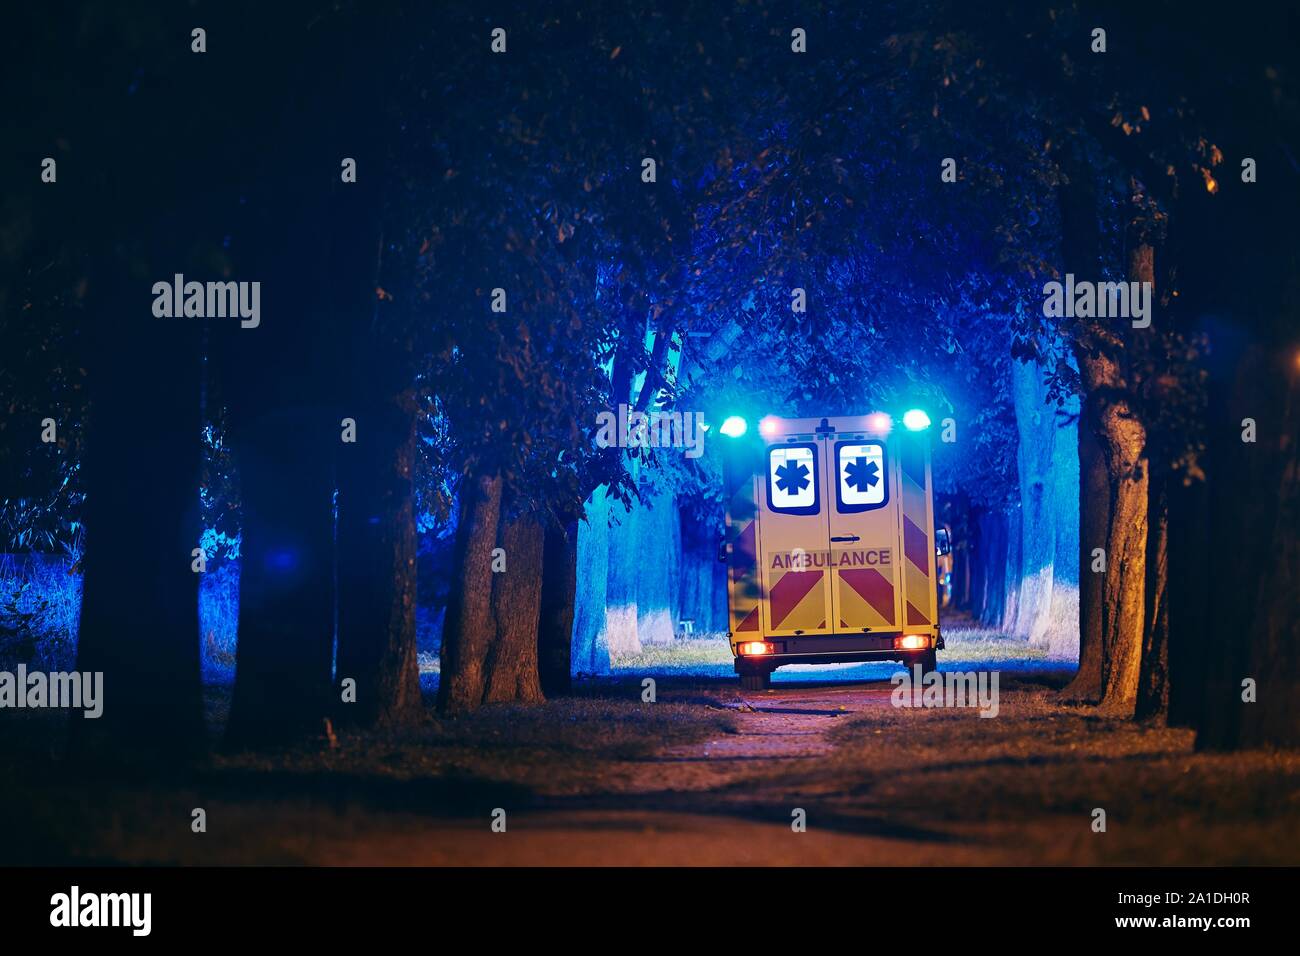 Salvataggio nel vicolo buio. Vista posteriore di ambulanza del servizio di emergenza medica contro gli alberi illuminati dal blu del lampeggiatore. Foto Stock